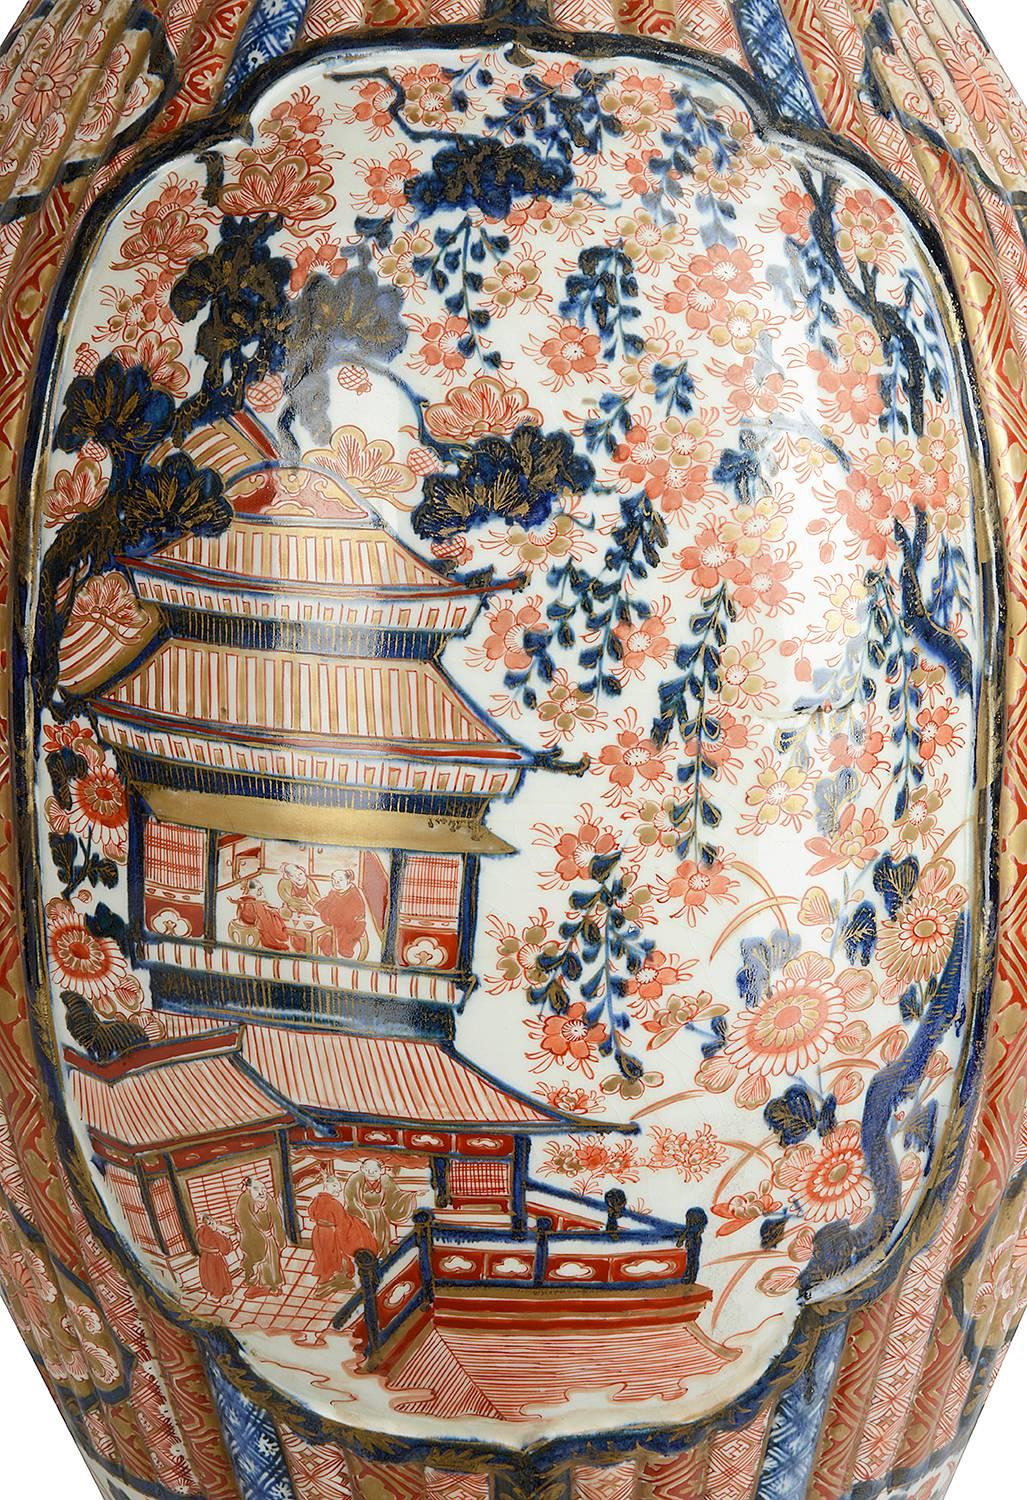 Eine große und beeindruckende japanische Imari-Vase aus dem 19. Jahrhundert in den klassischen Imari-Farben Orange, Rot und Blau. Traditionelle Motive auf dem Boden. Mythische Vögel inmitten von Blumen, der Körper der Vase hat eine erhabene,